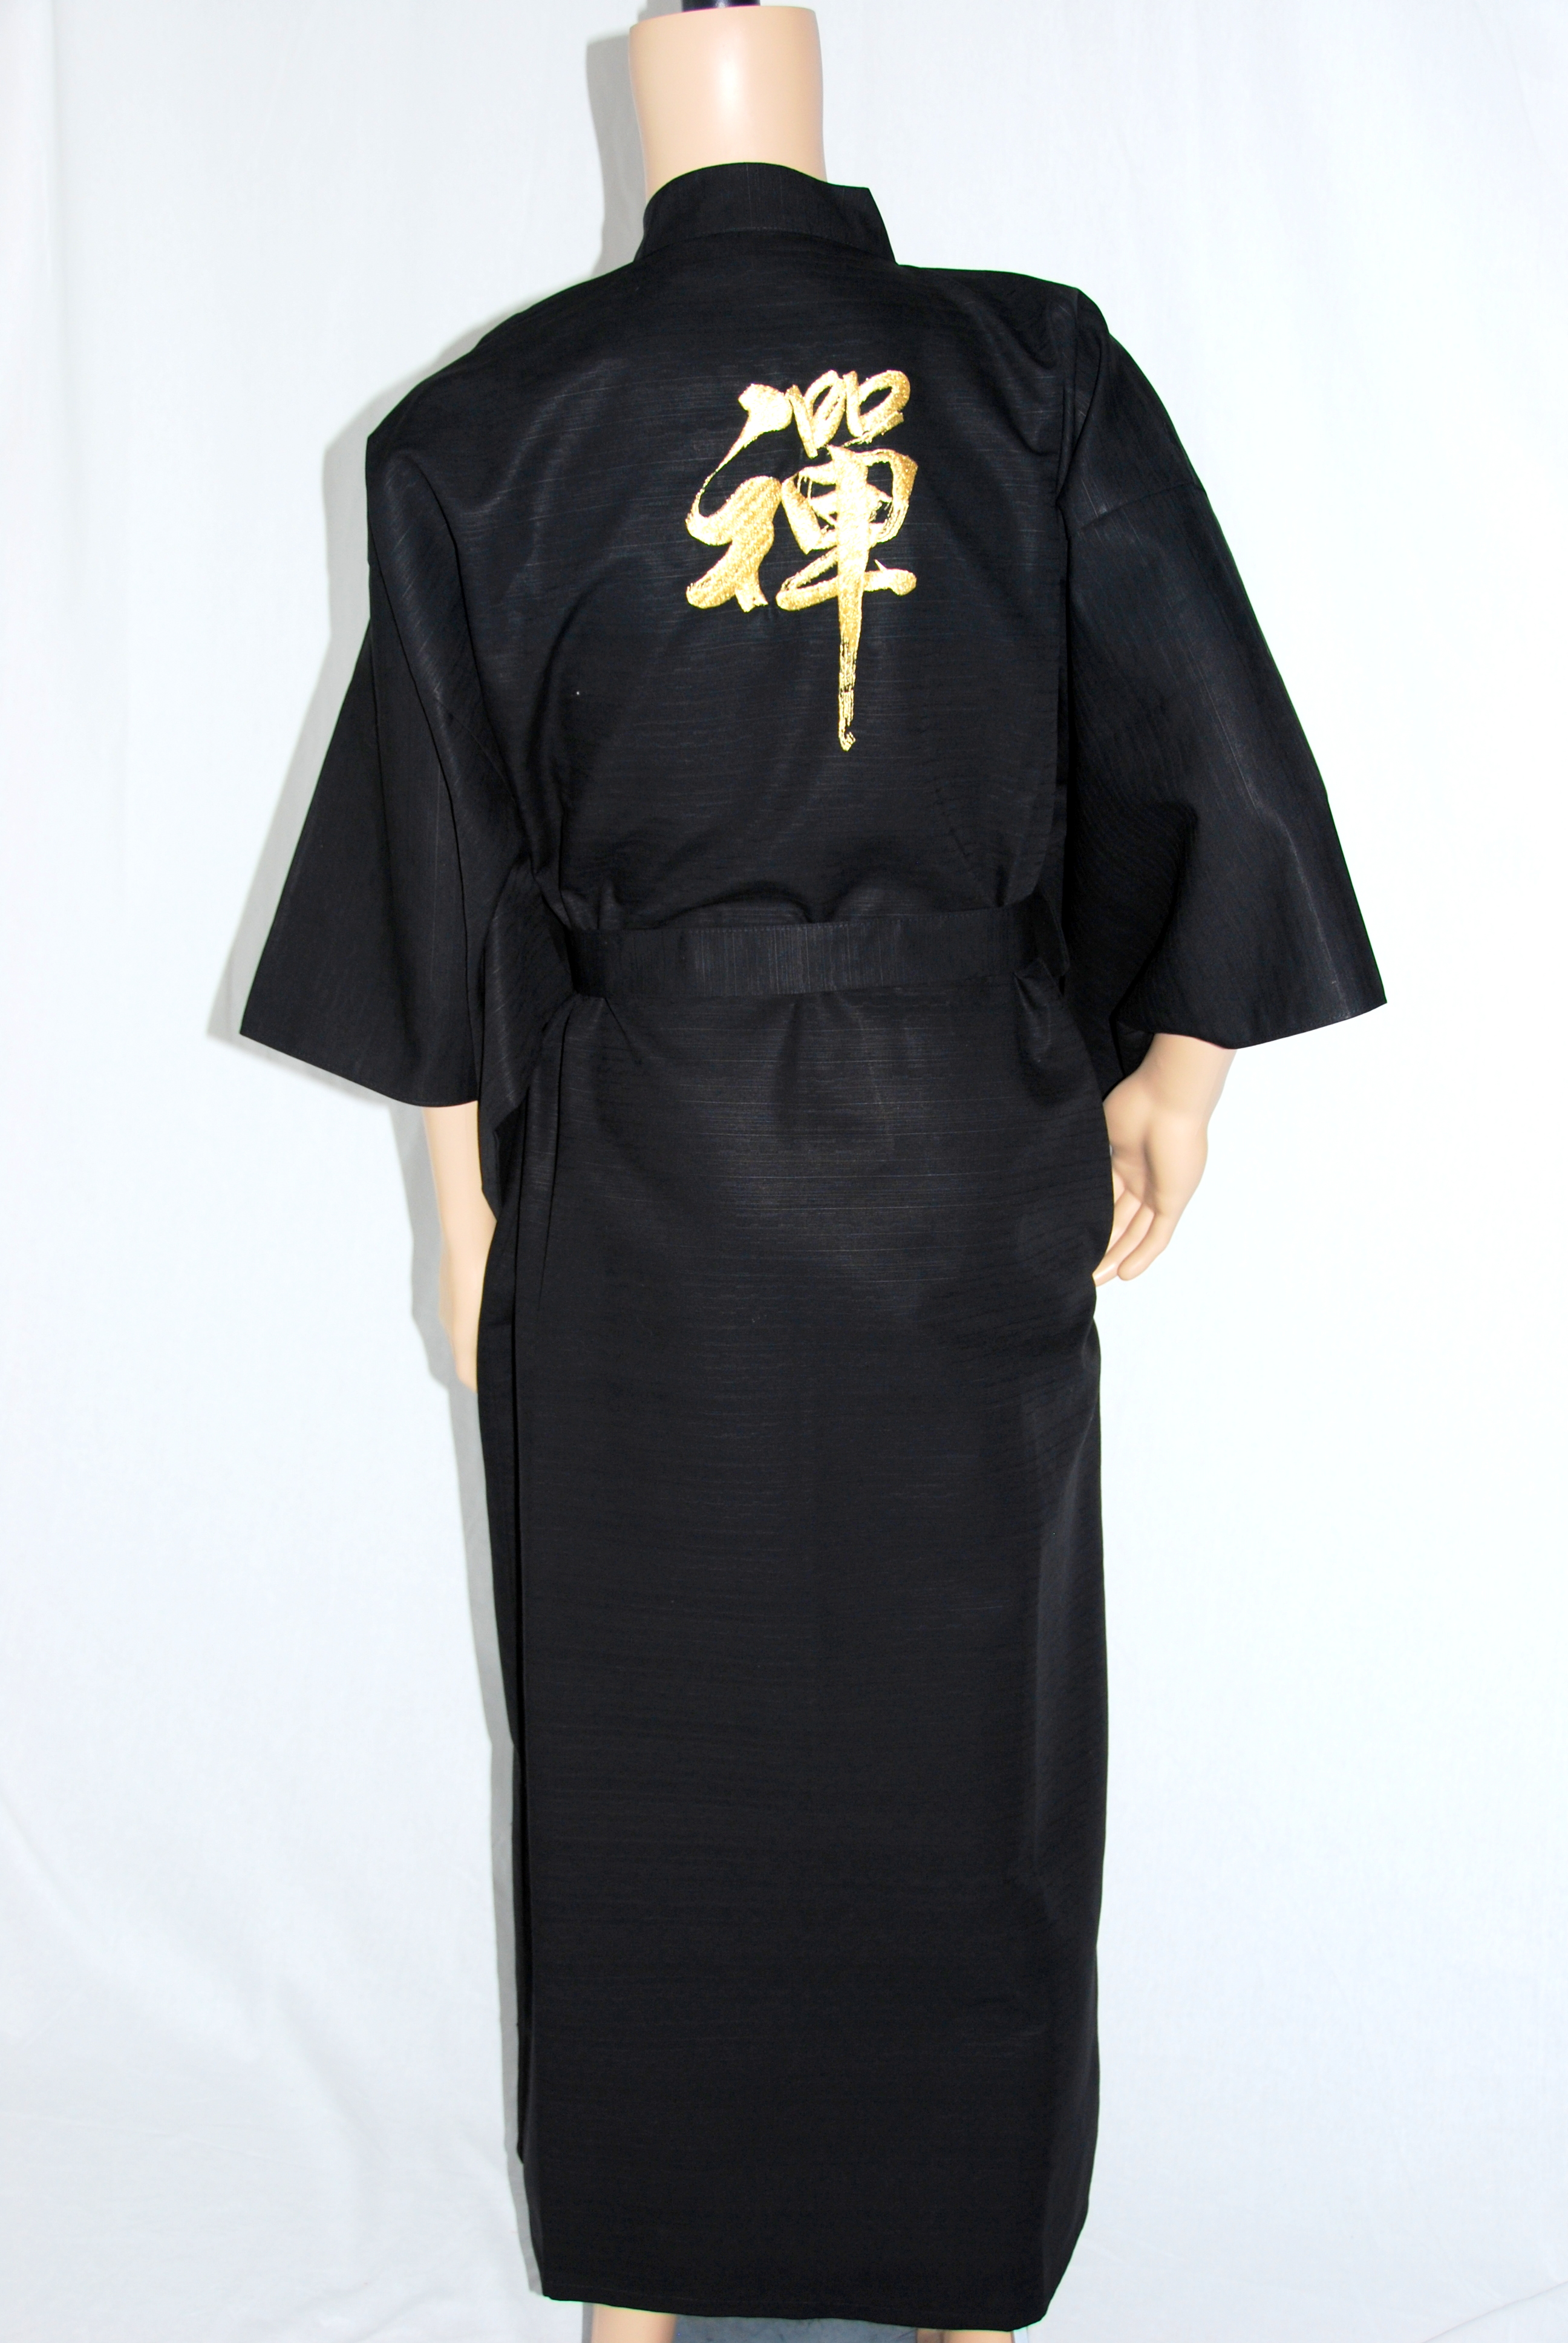 Fashion-Kimono - "Zen" Schwarz